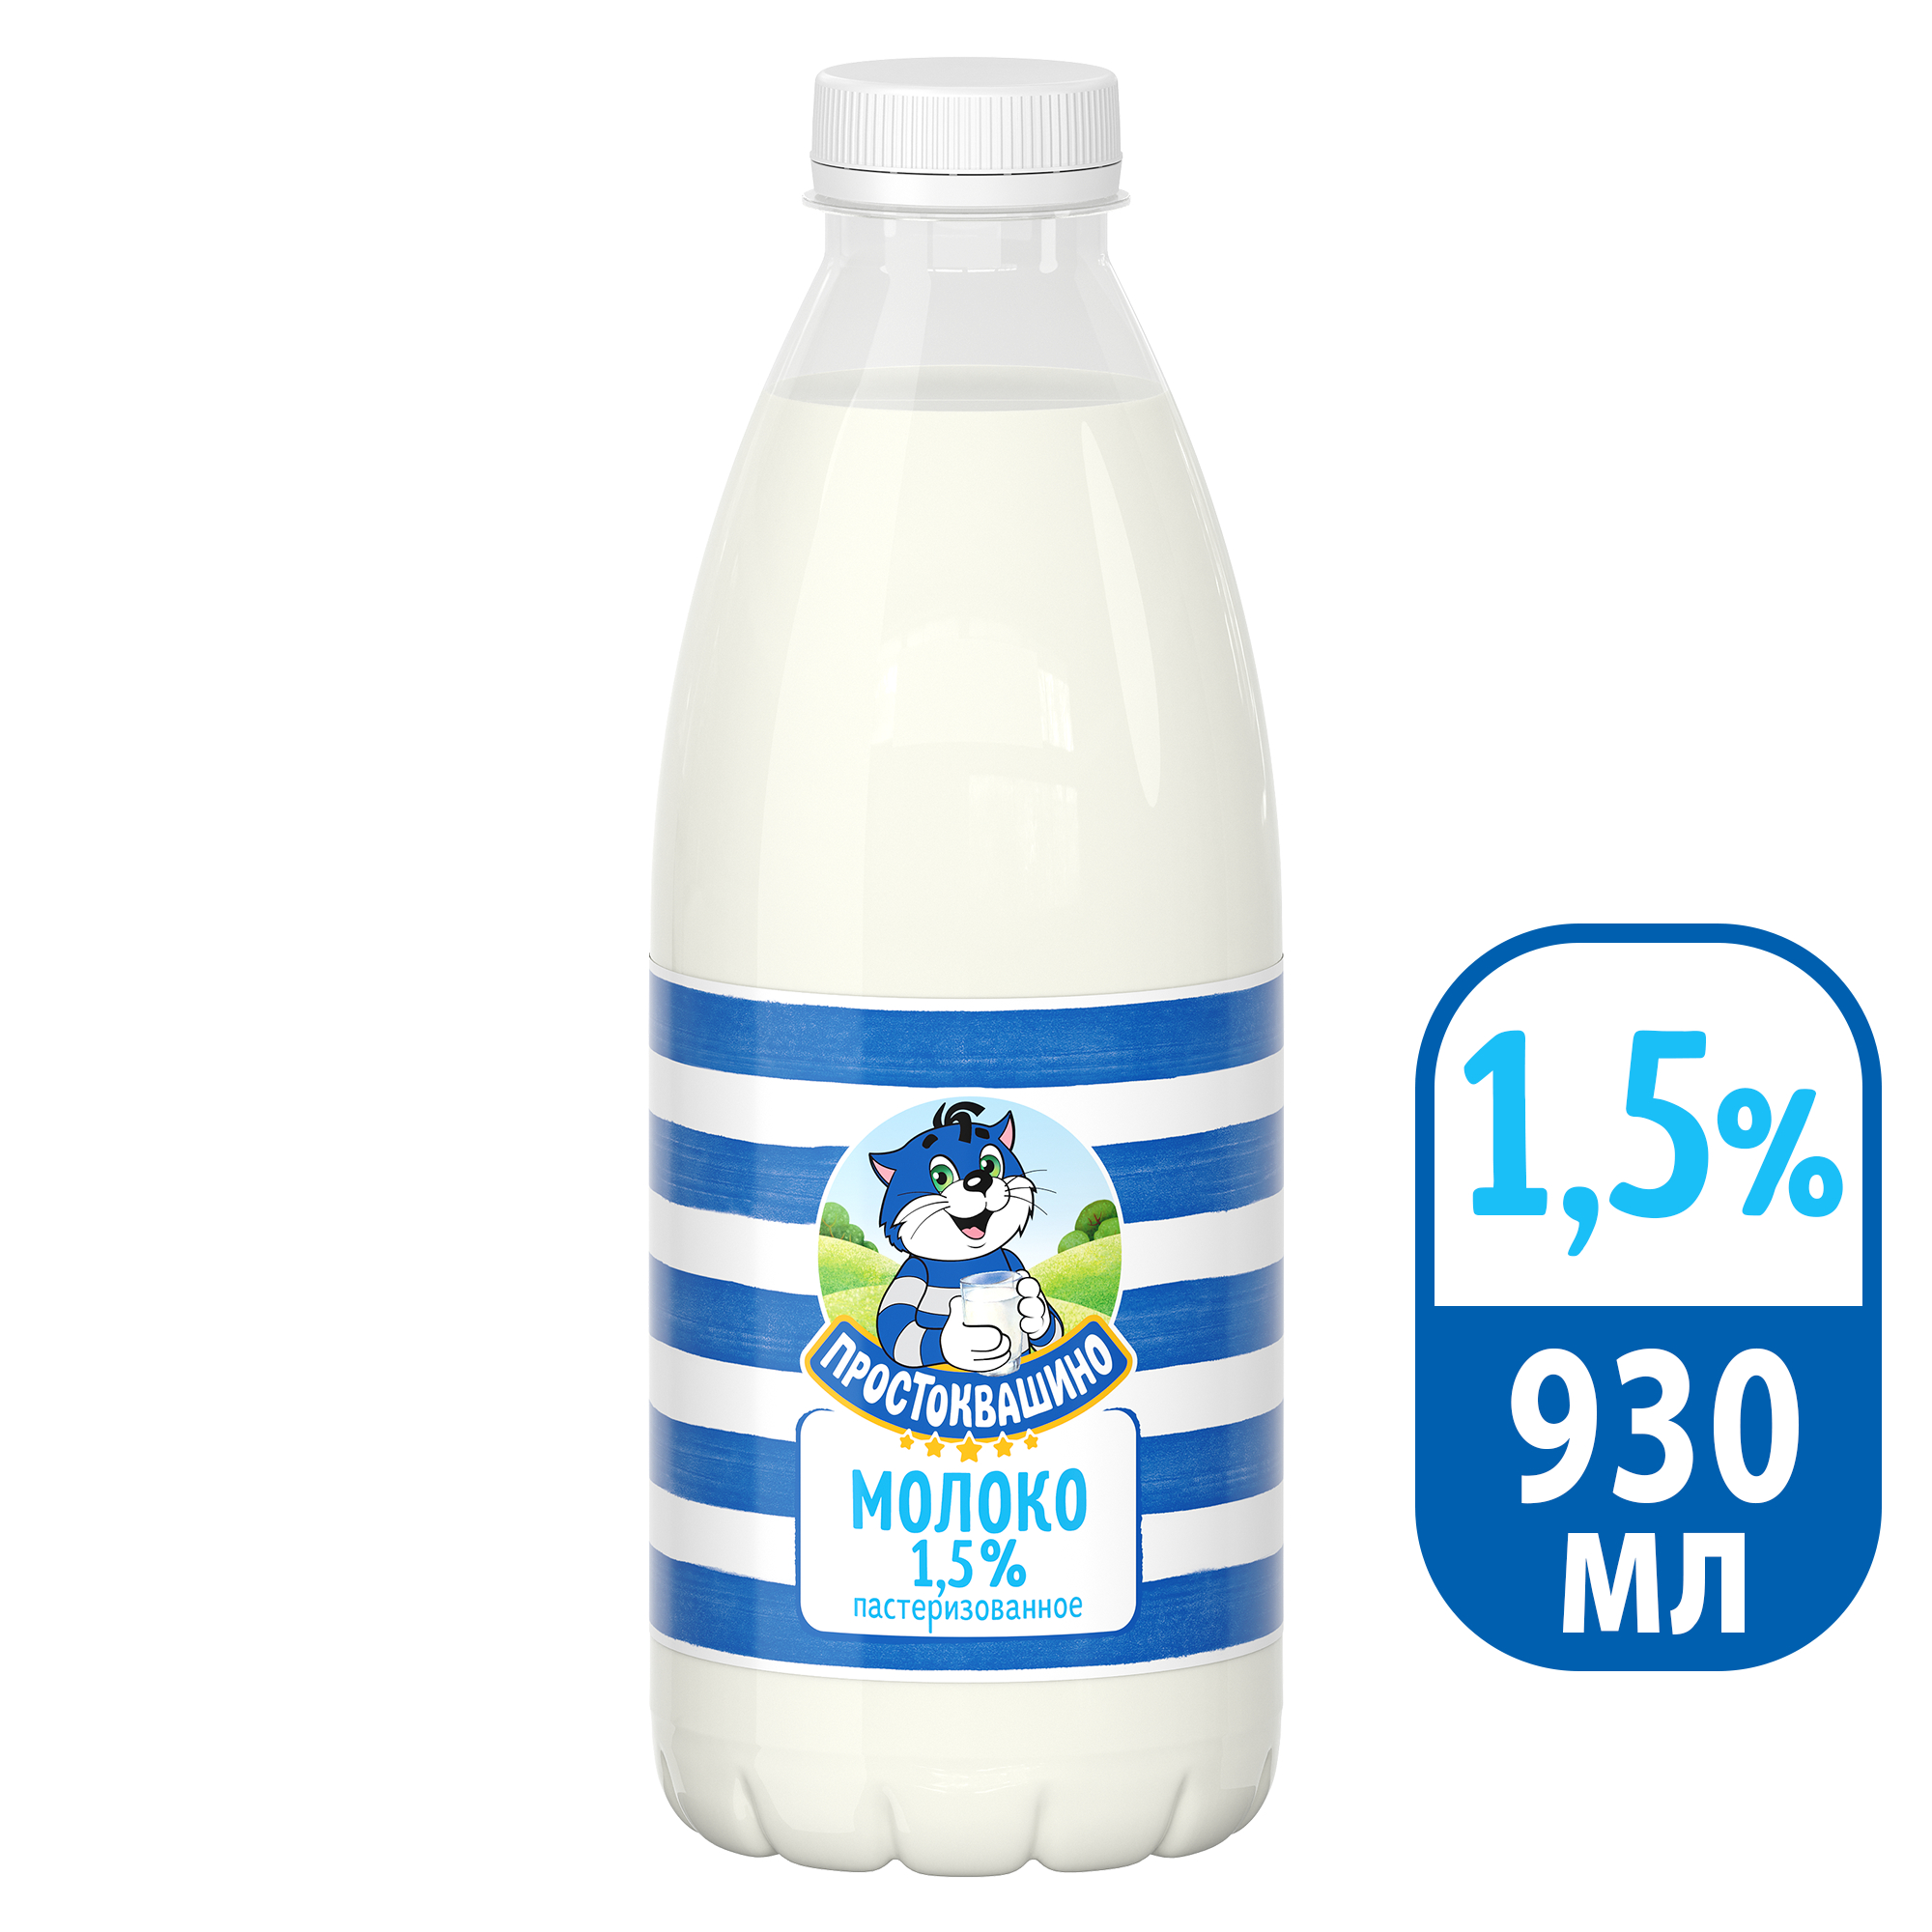 Молоко 1,5% пастеризованное 930 мл Простоквашино